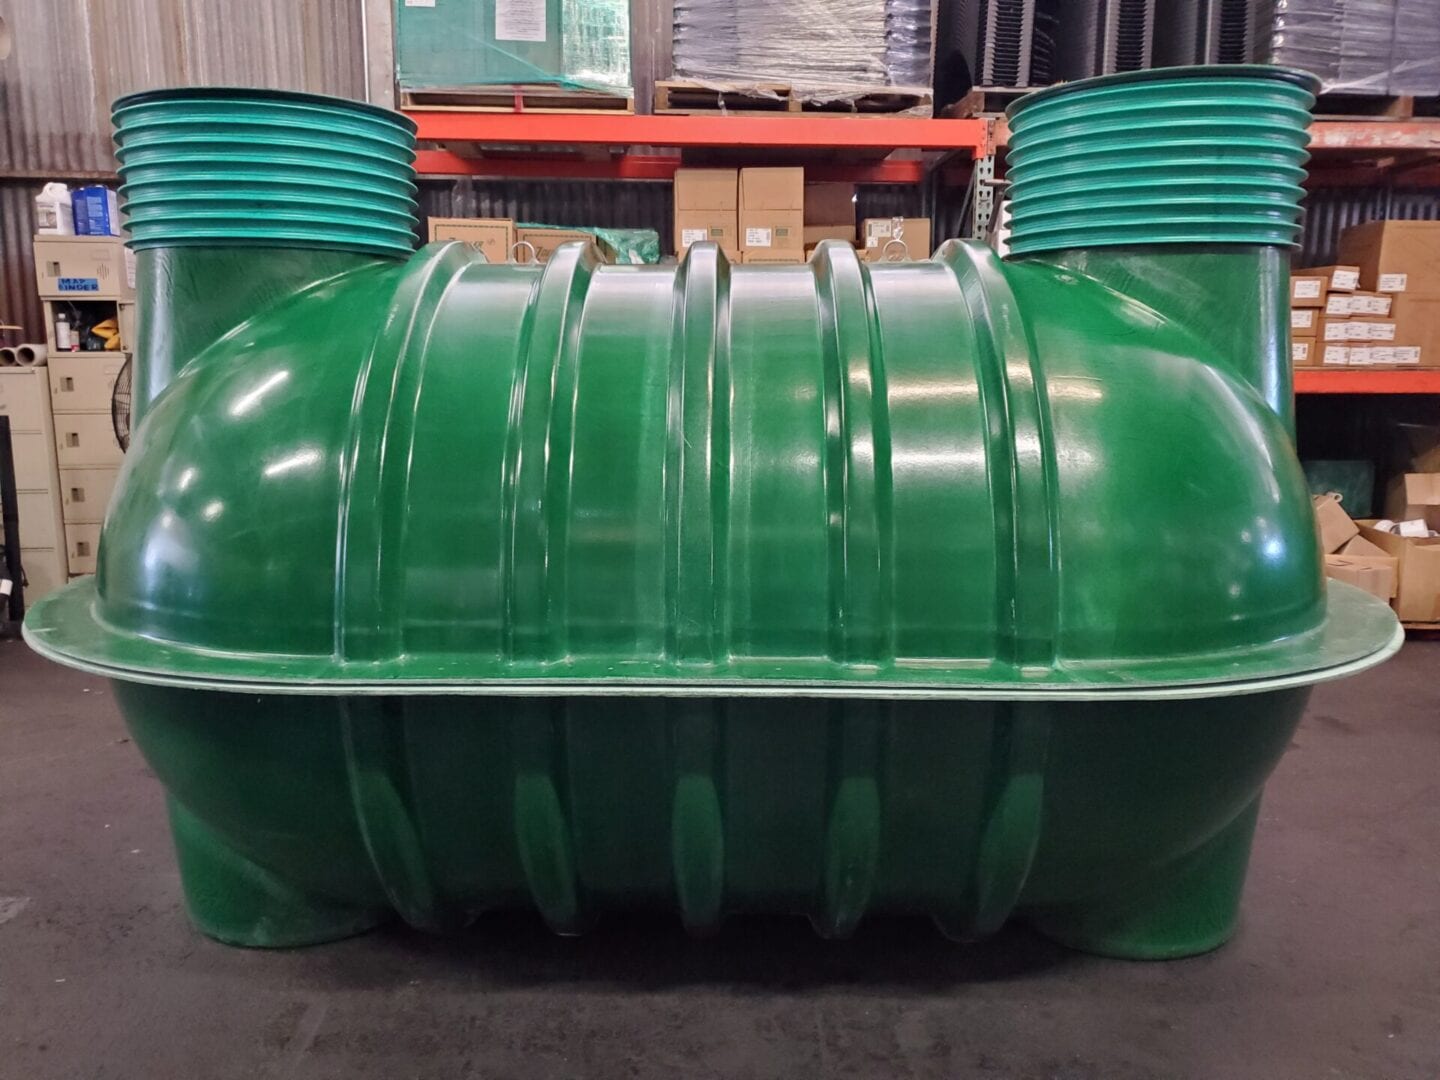 Fiberglass septic tank green inside a warehouse